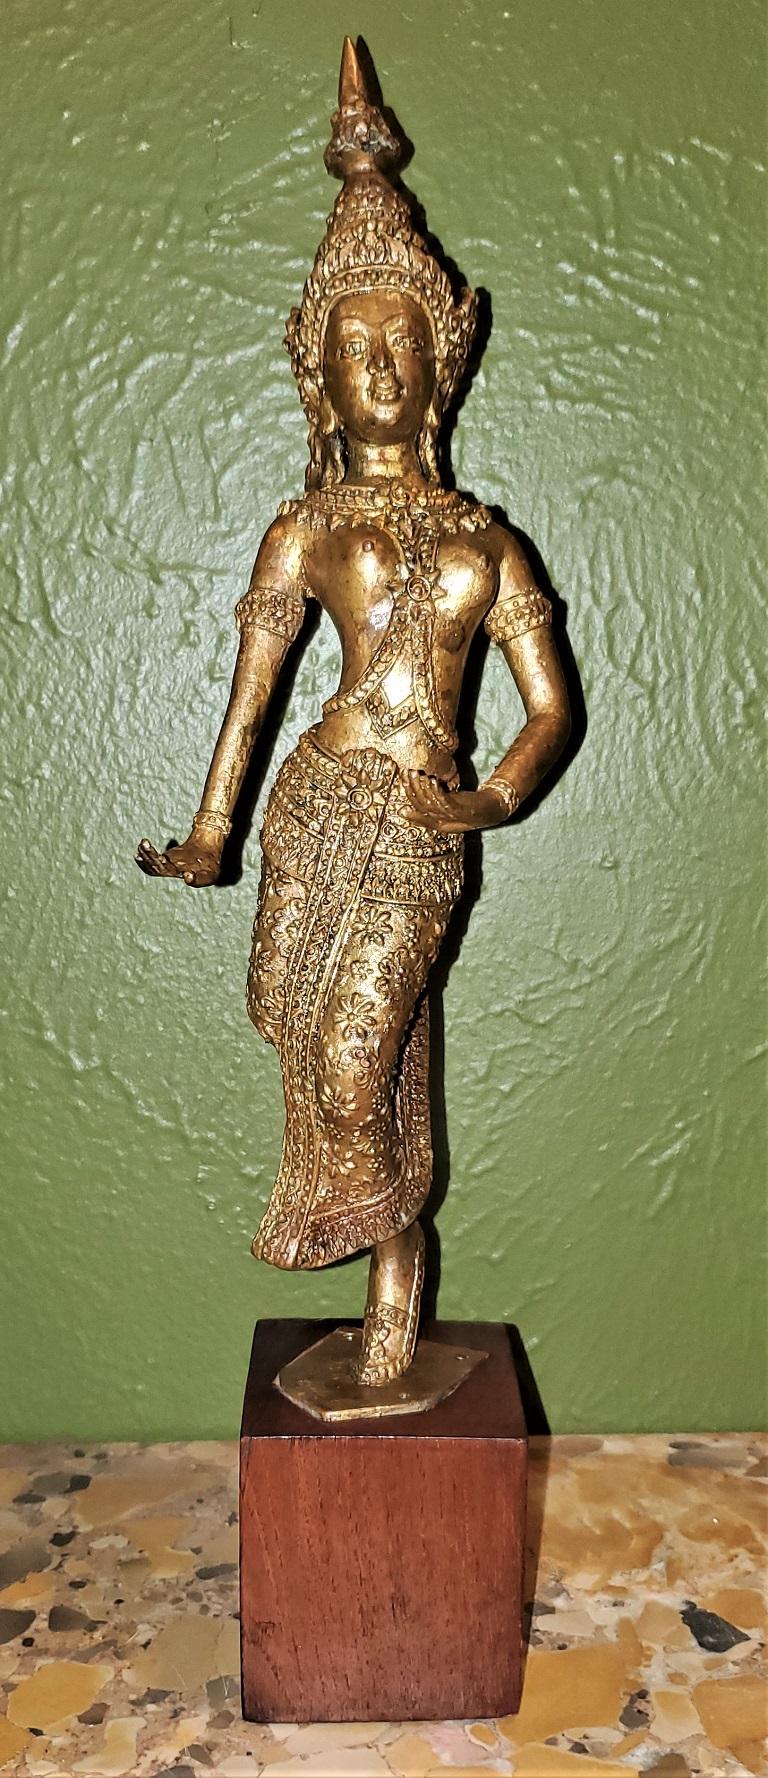 Wir präsentieren eine schöne thailändische Khon-Tänzerin aus vergoldetem Metall aus dem frühen 20.

Hergestellt in Thailand (Südostasien) um 1920.

Es zeigt eine vergoldete Metallstatue einer traditionellen thailändischen Khon-Tänzerin in Pose und